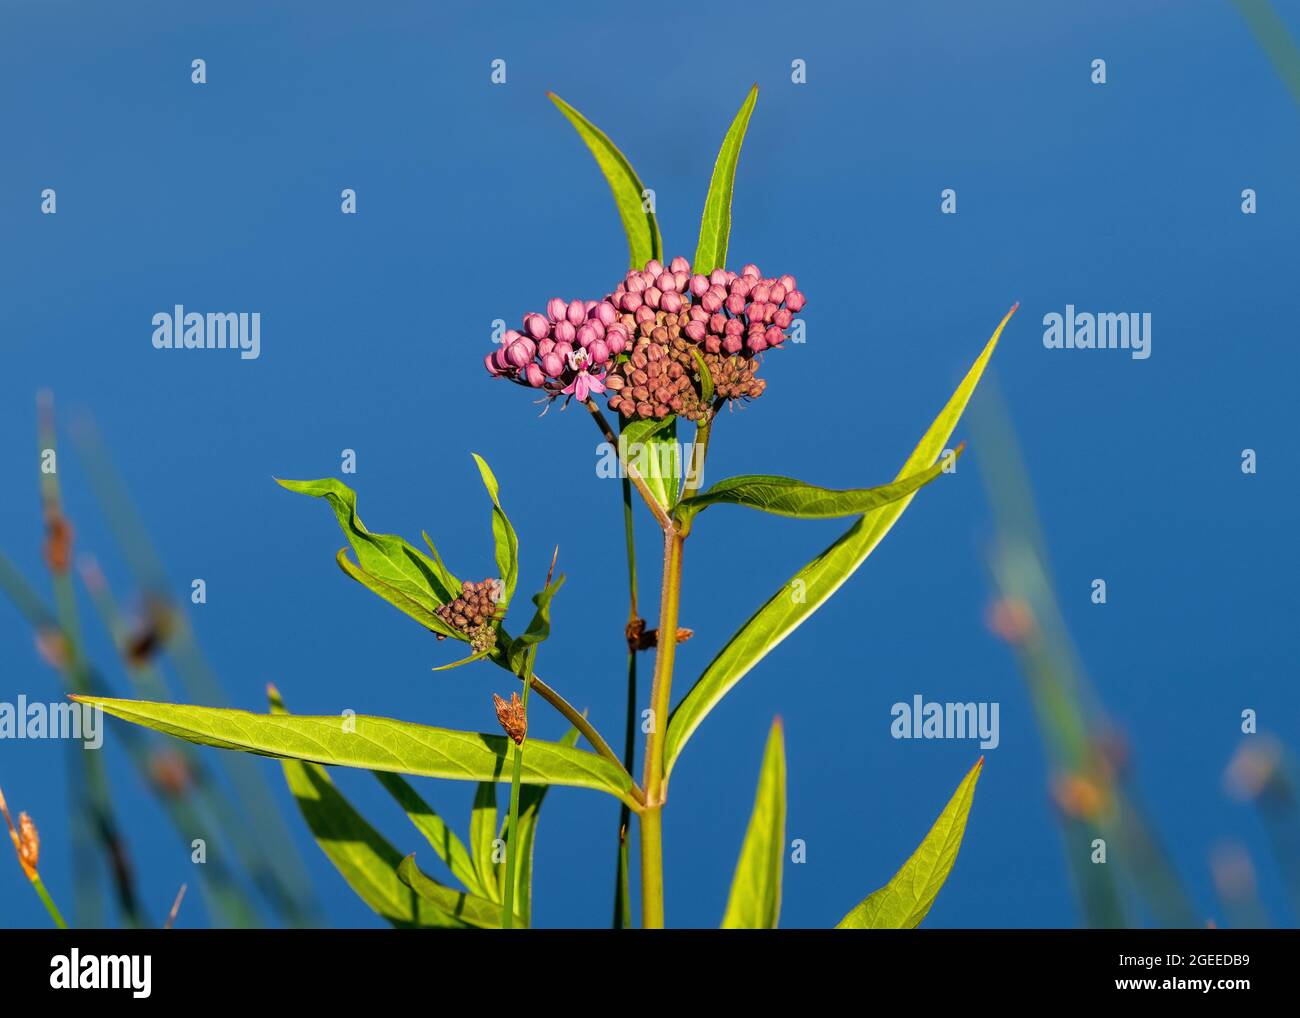 Primo piano di una pianta palude Milkweed (Asclepias incarnata) nelle prime fasi del suo ciclo di fioritura. Foto Stock